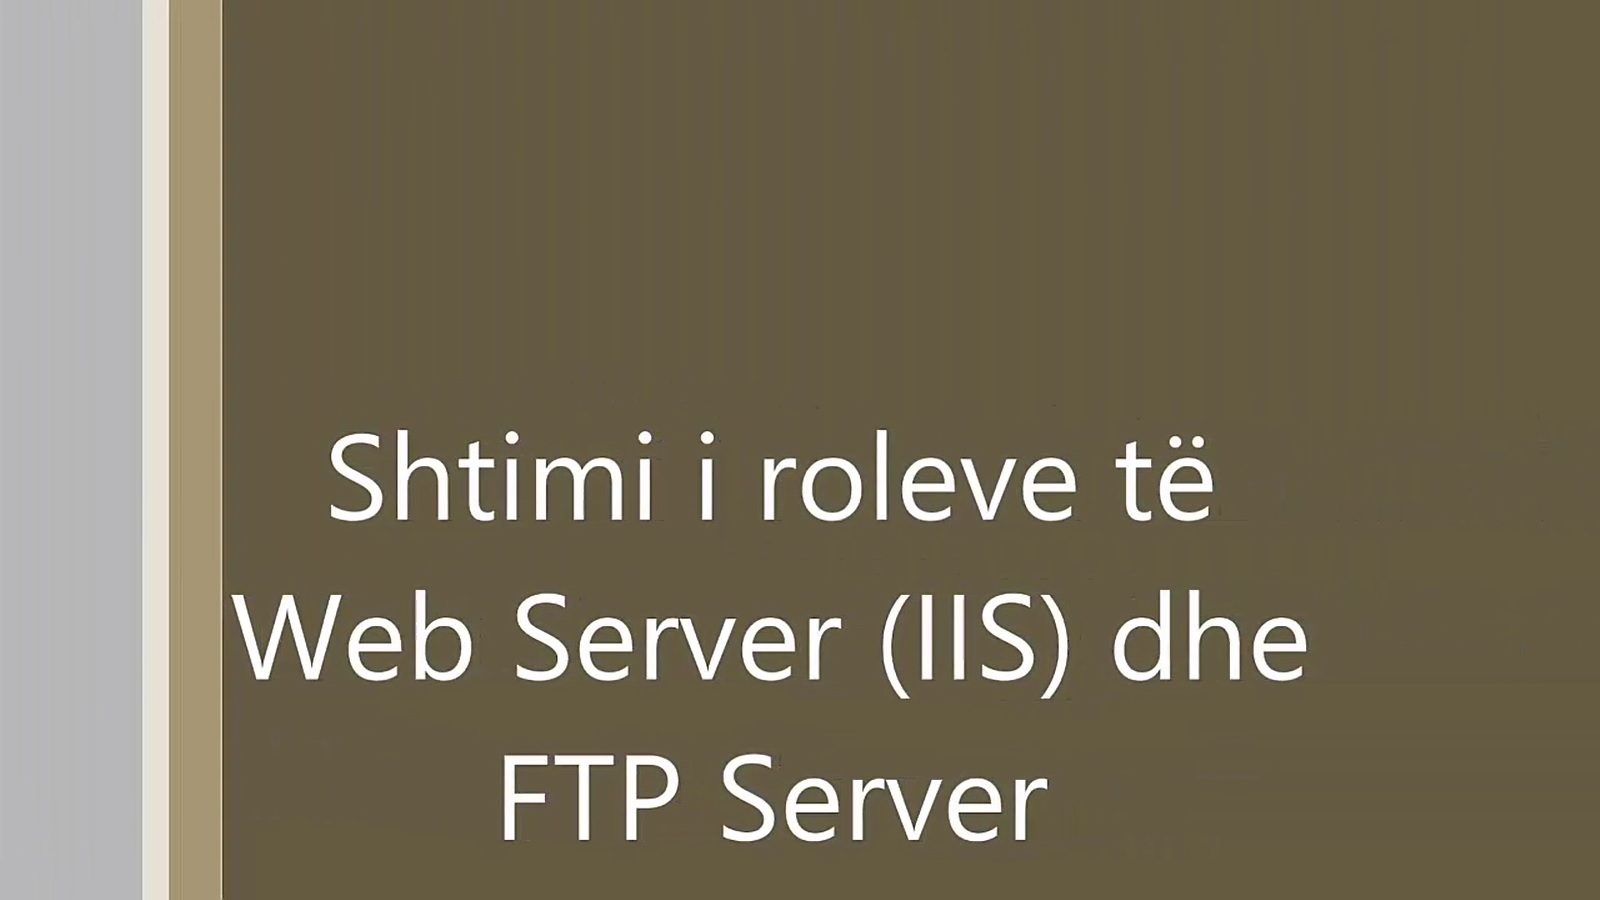 Web Server dhe FTP Server